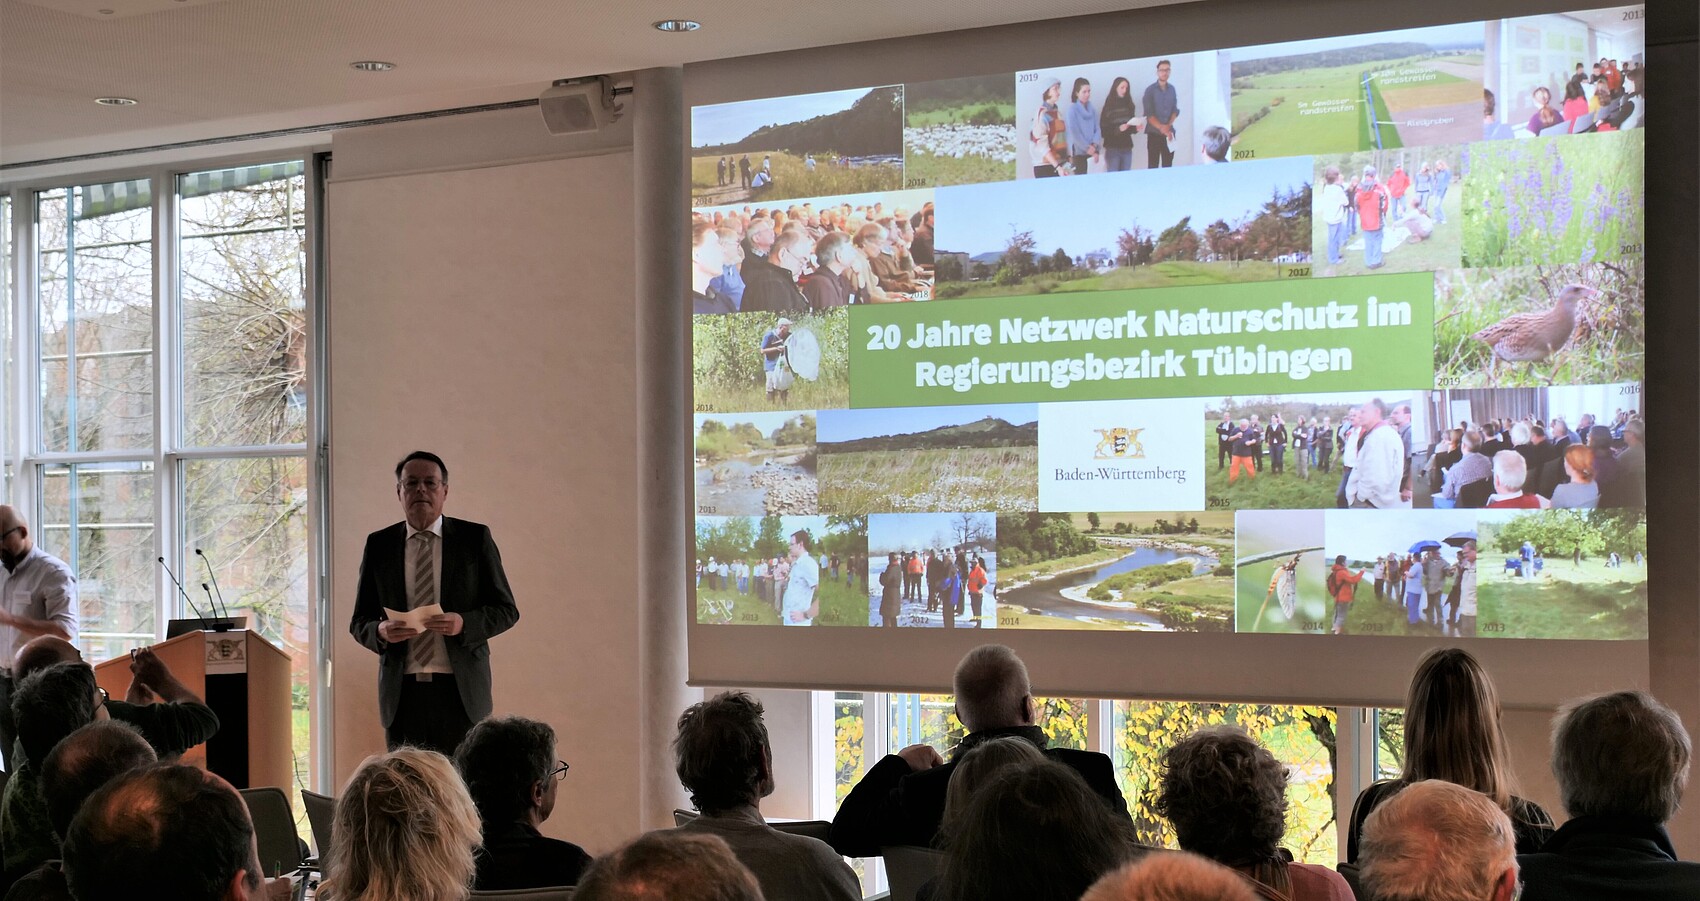 Regierungspräsident Klaus Tappeser bedankt sich für 20 Jahre vernetzte Naturschutzarbeit